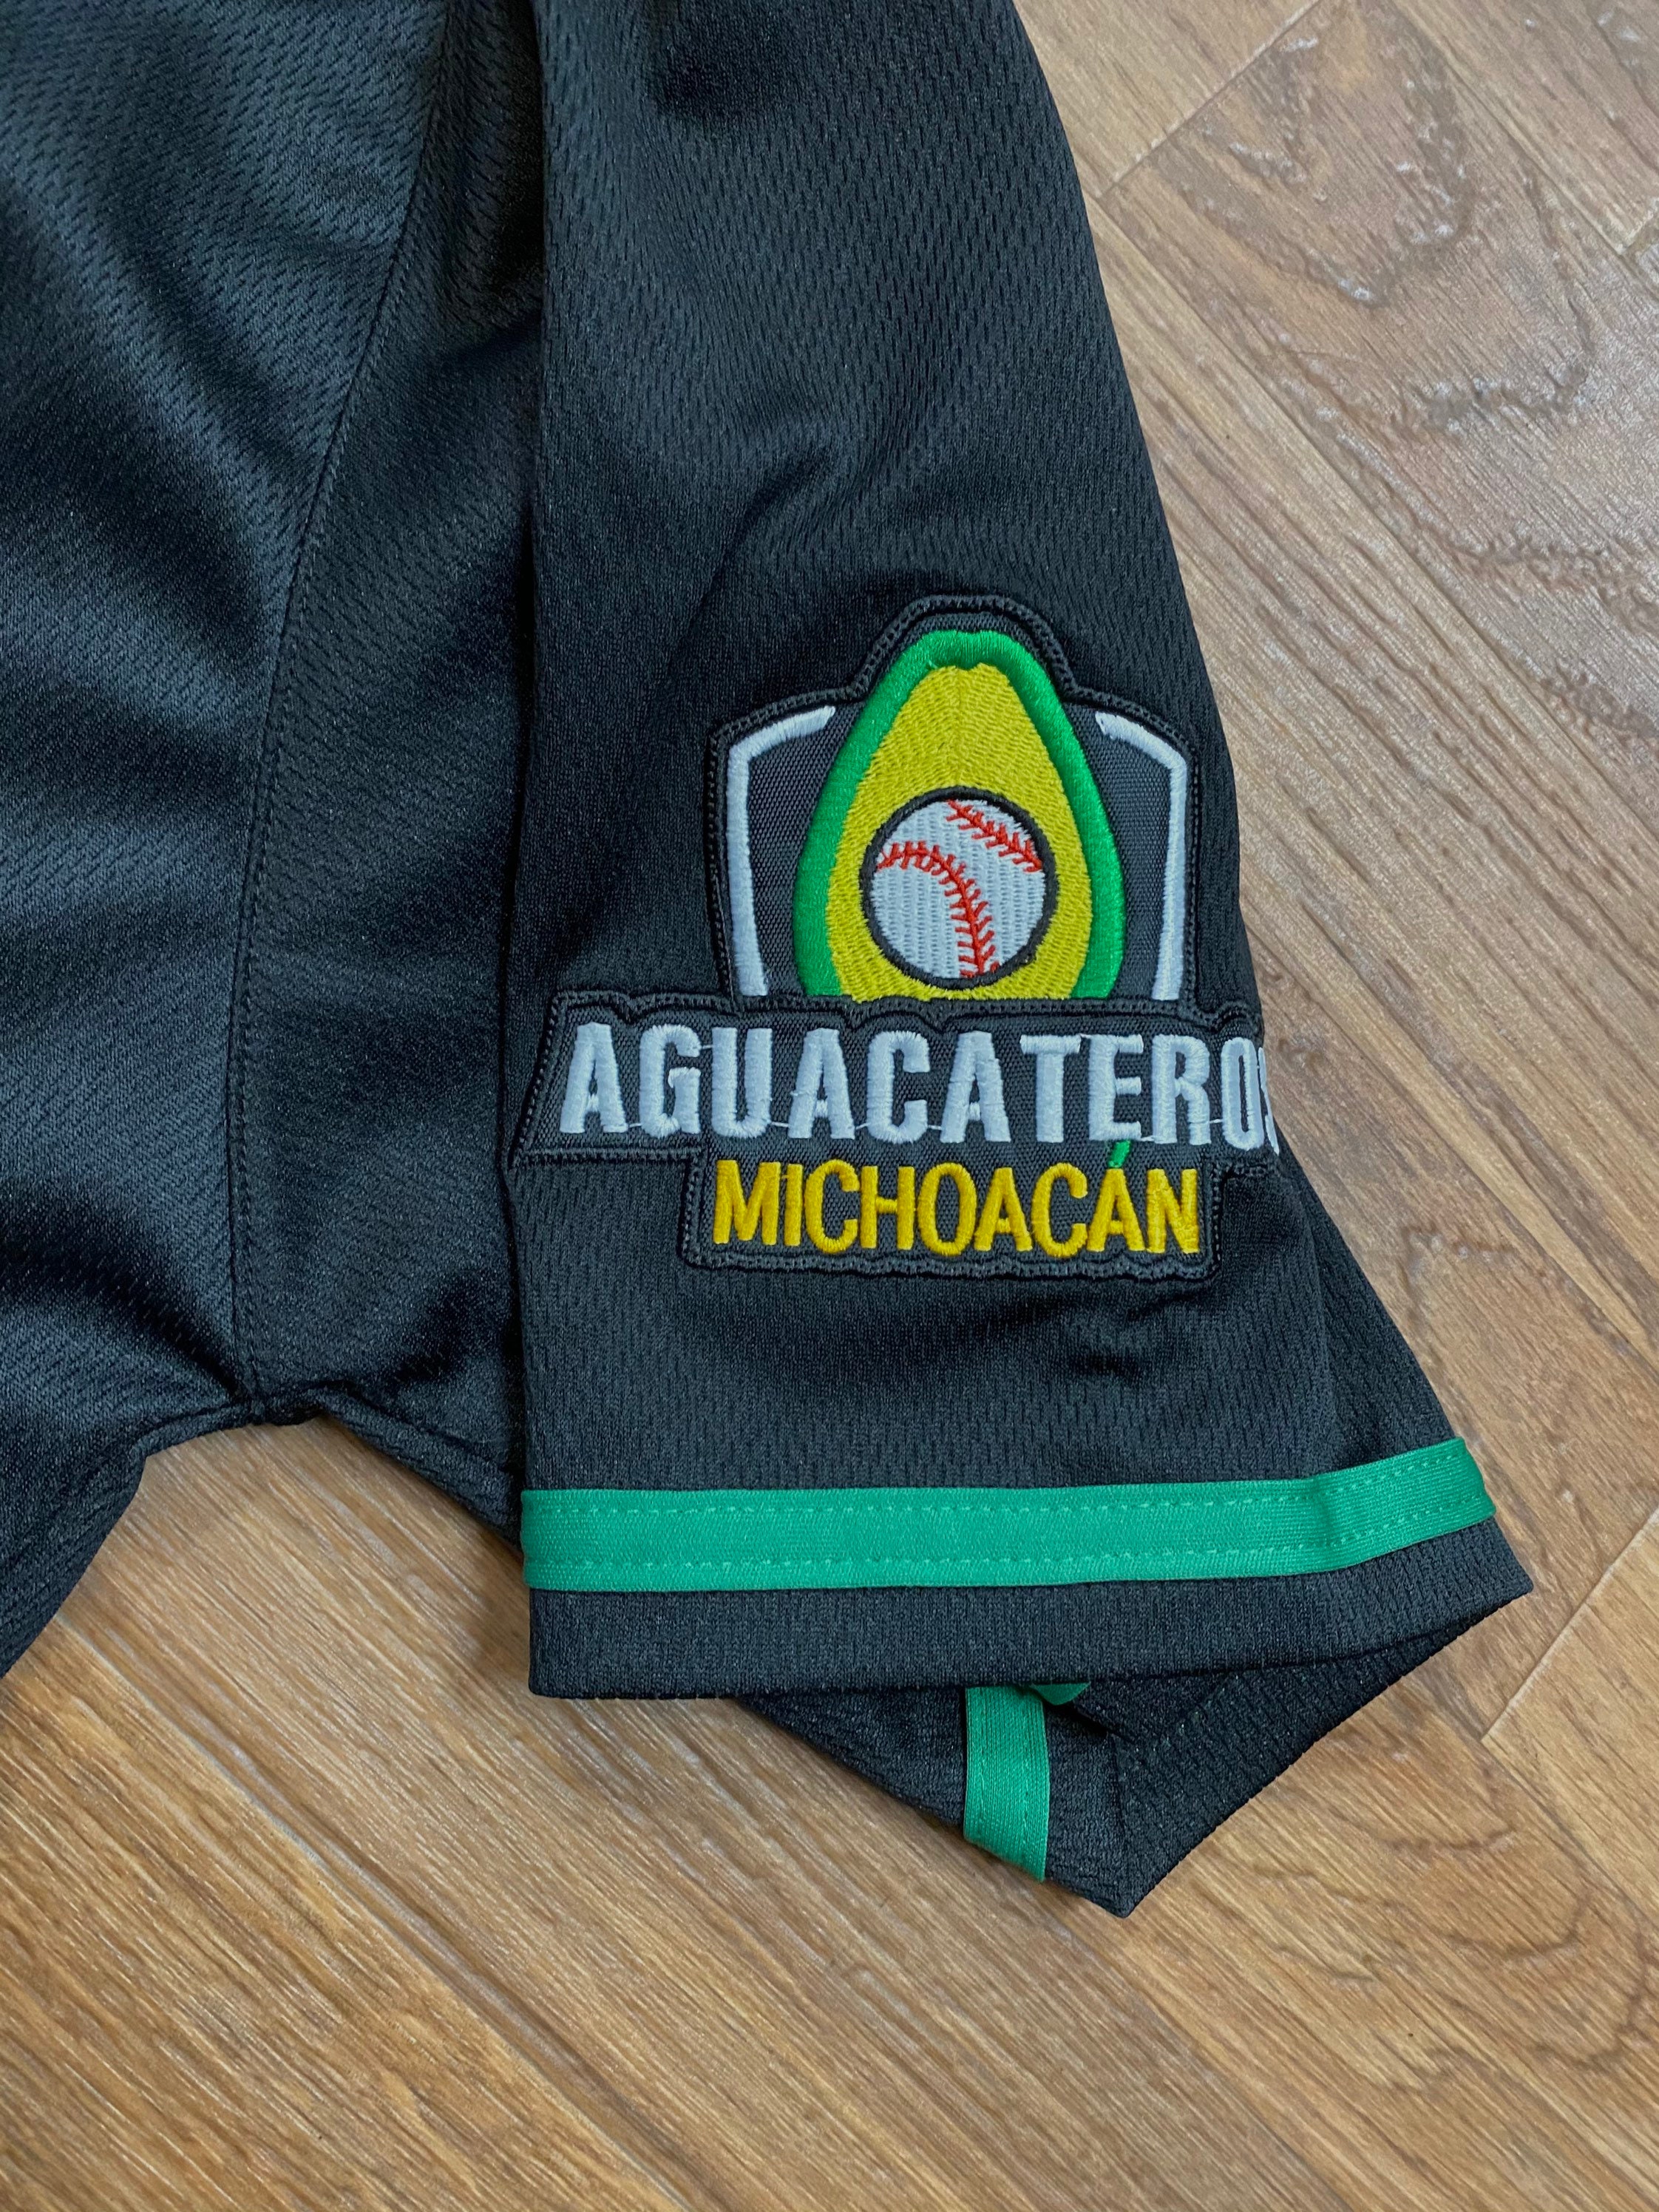 Aguacateros de Michoacán casaca, Aguacateros Jersey Black Mexico Embroidery  Free shipping, Free decal, Calcomanía Gratis!